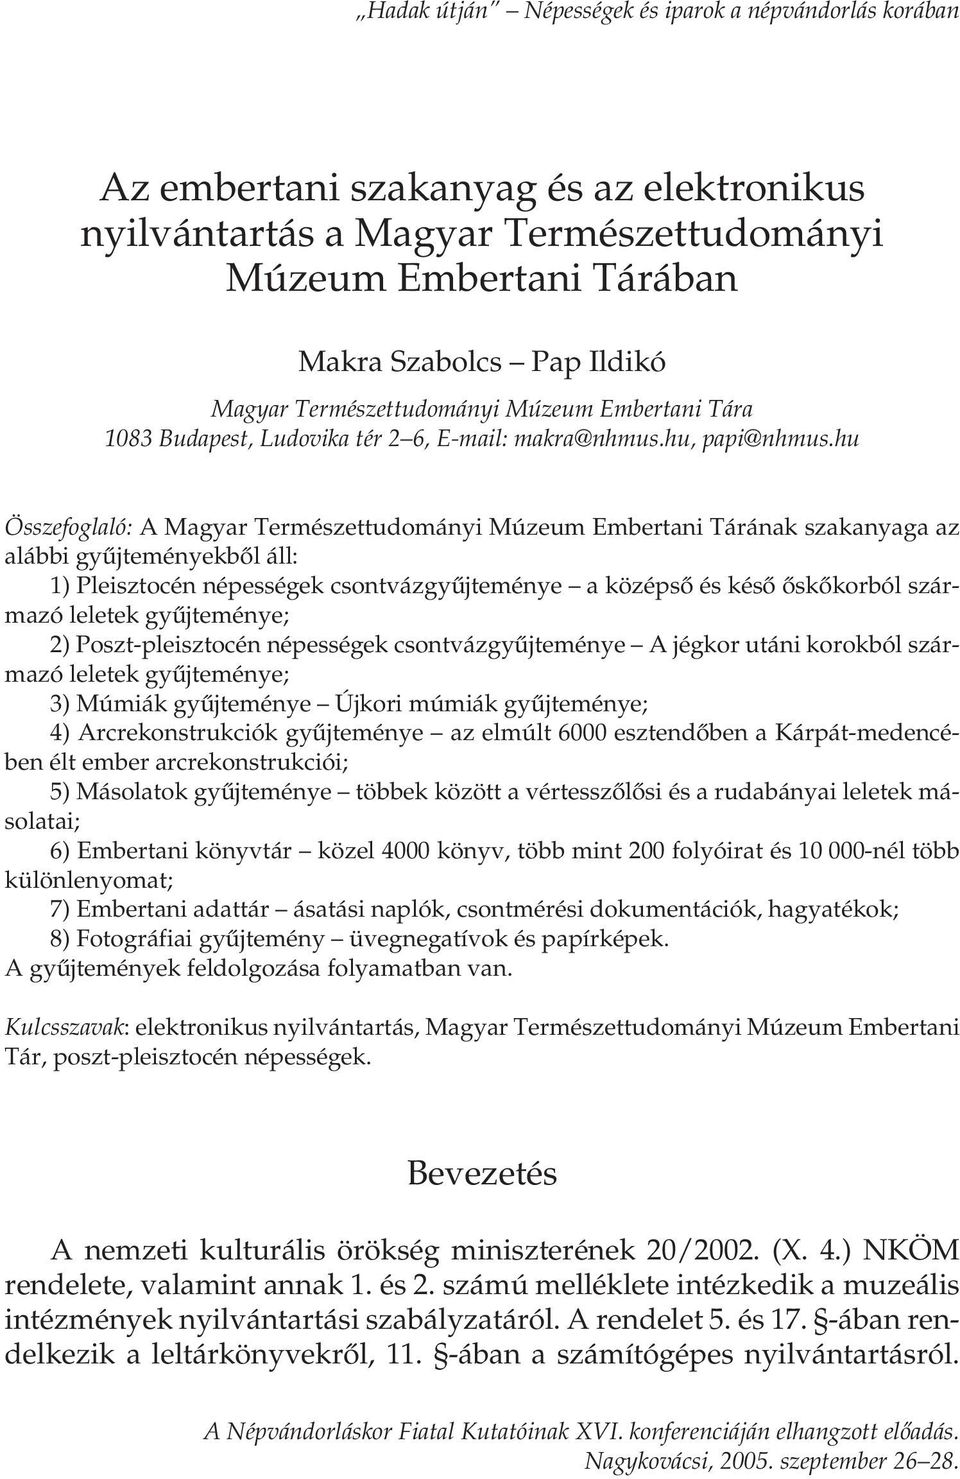 hu Összefoglaló: A Magyar Természettudományi Múzeum Embertani Tárának szakanyaga az alábbi gyűjteményekből áll: 1) Pleisztocén népességek csontvázgyűjteménye a középső és késő őskőkorból származó